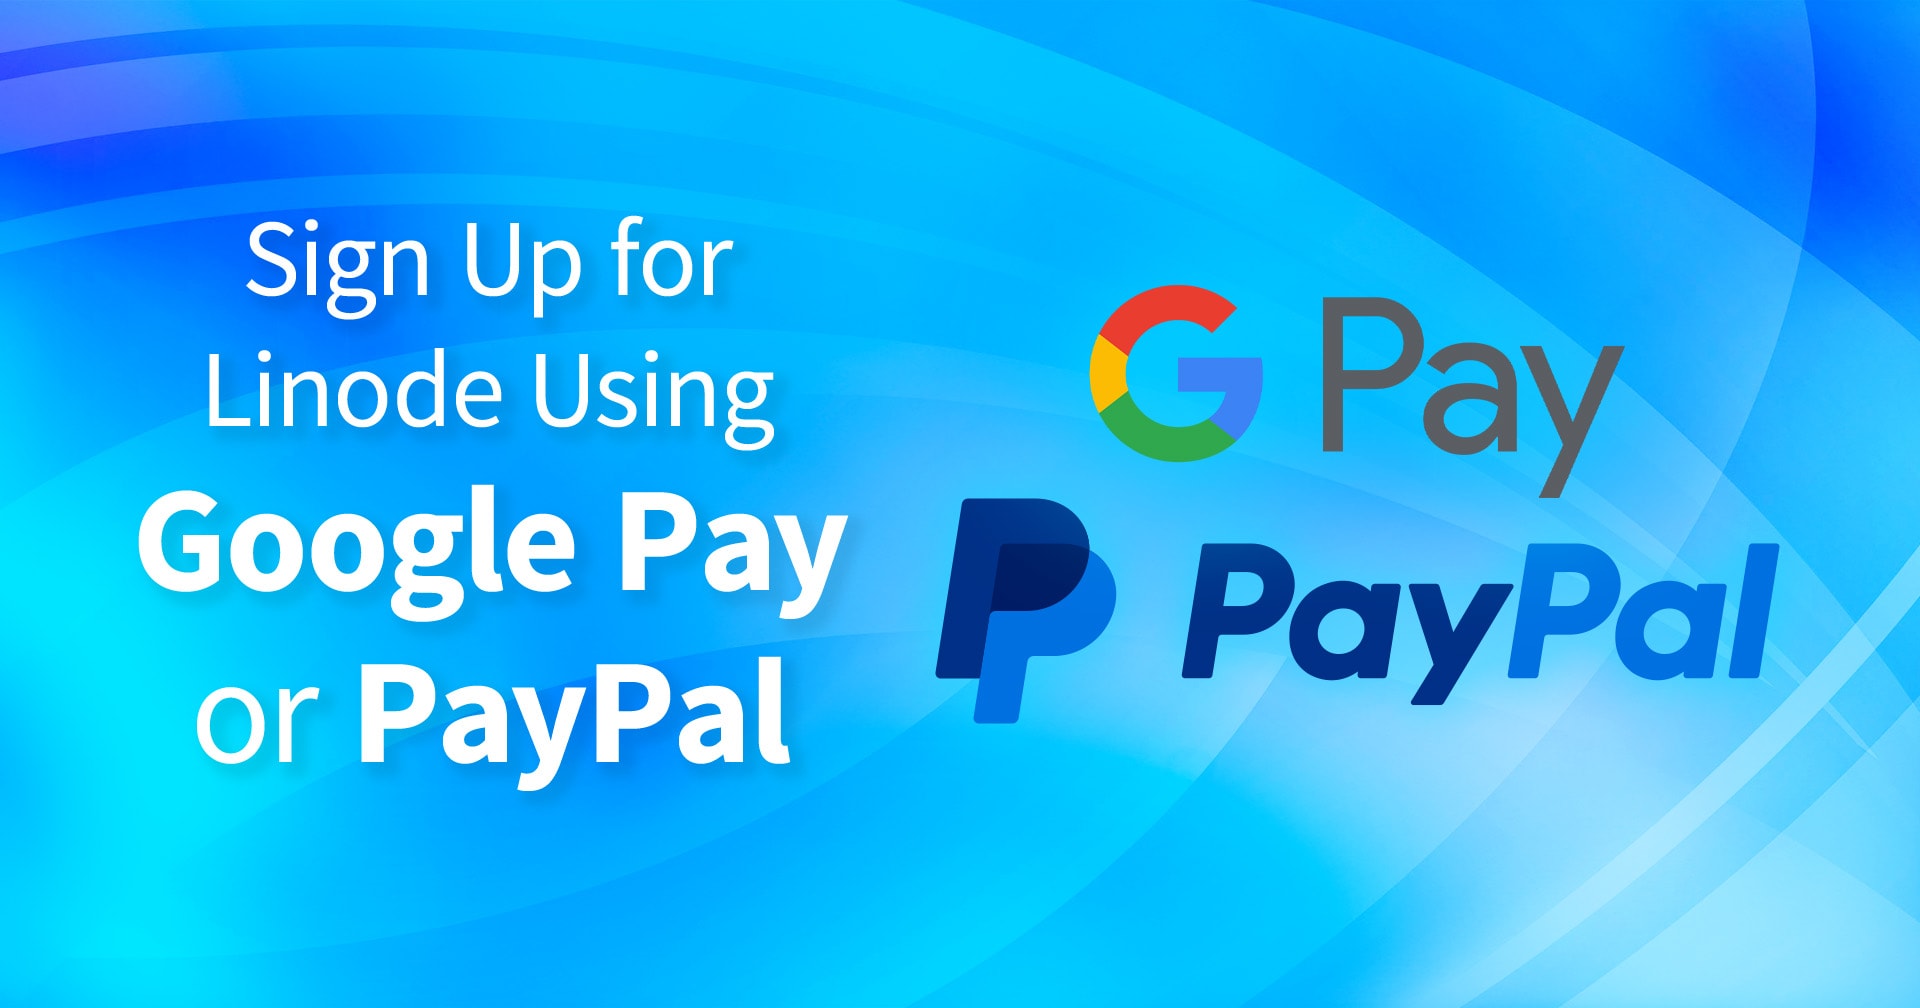 Anmeldung für Linode mit Google-Pay oder PayPal